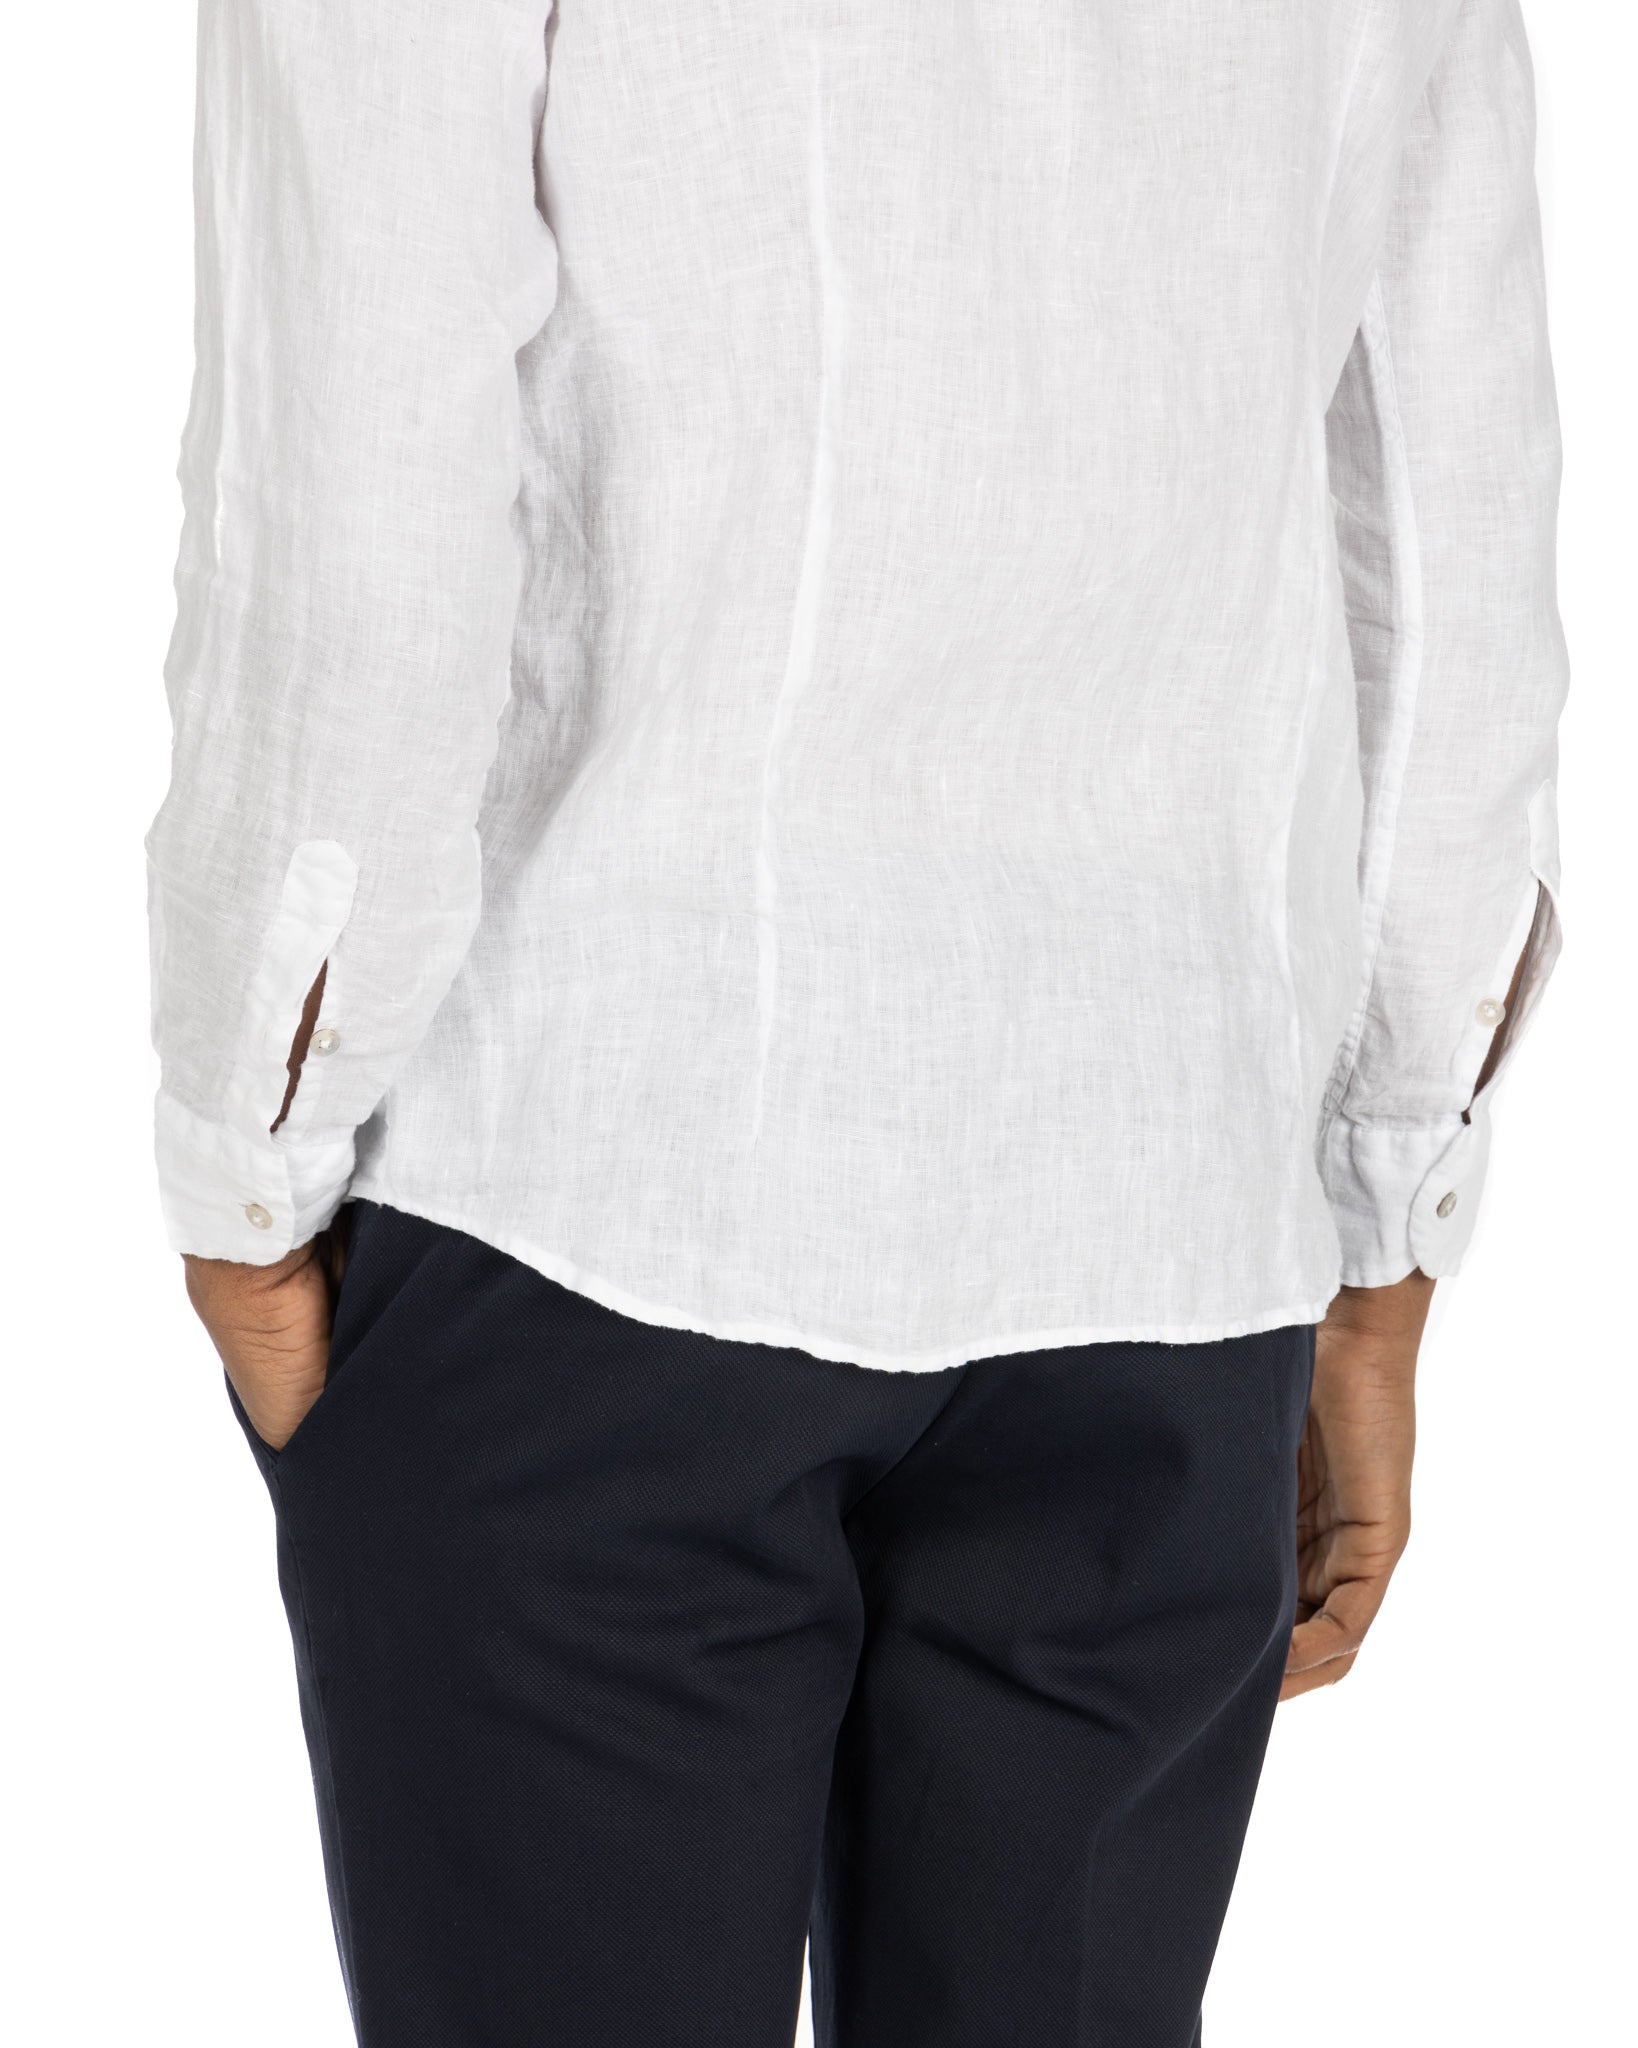 Montecarlo - pure white linen shirt